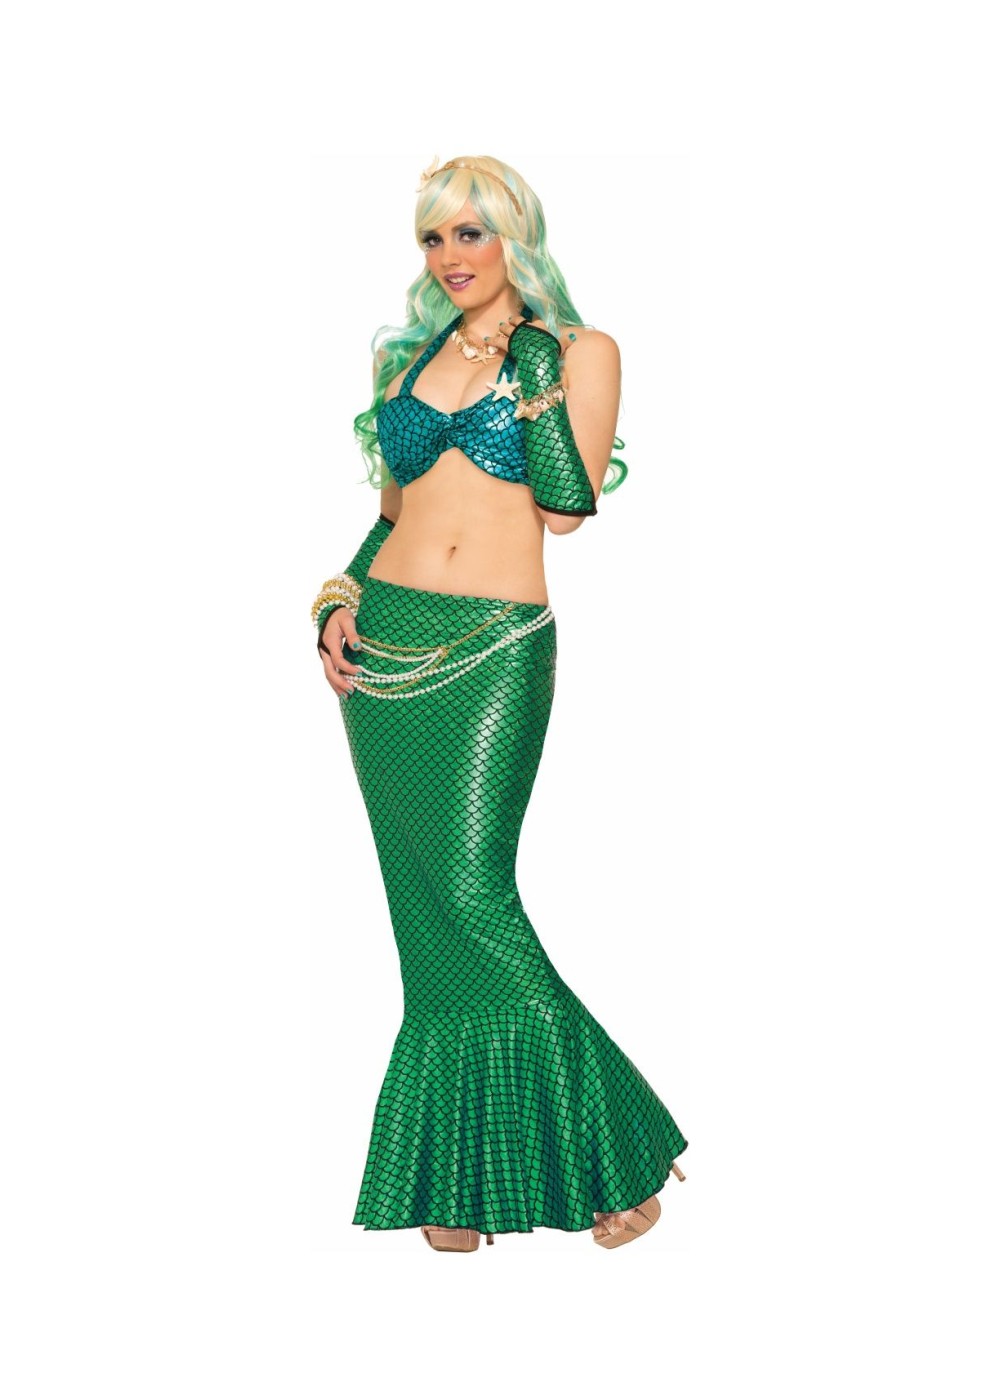 Mermaid Woman Costume Kit